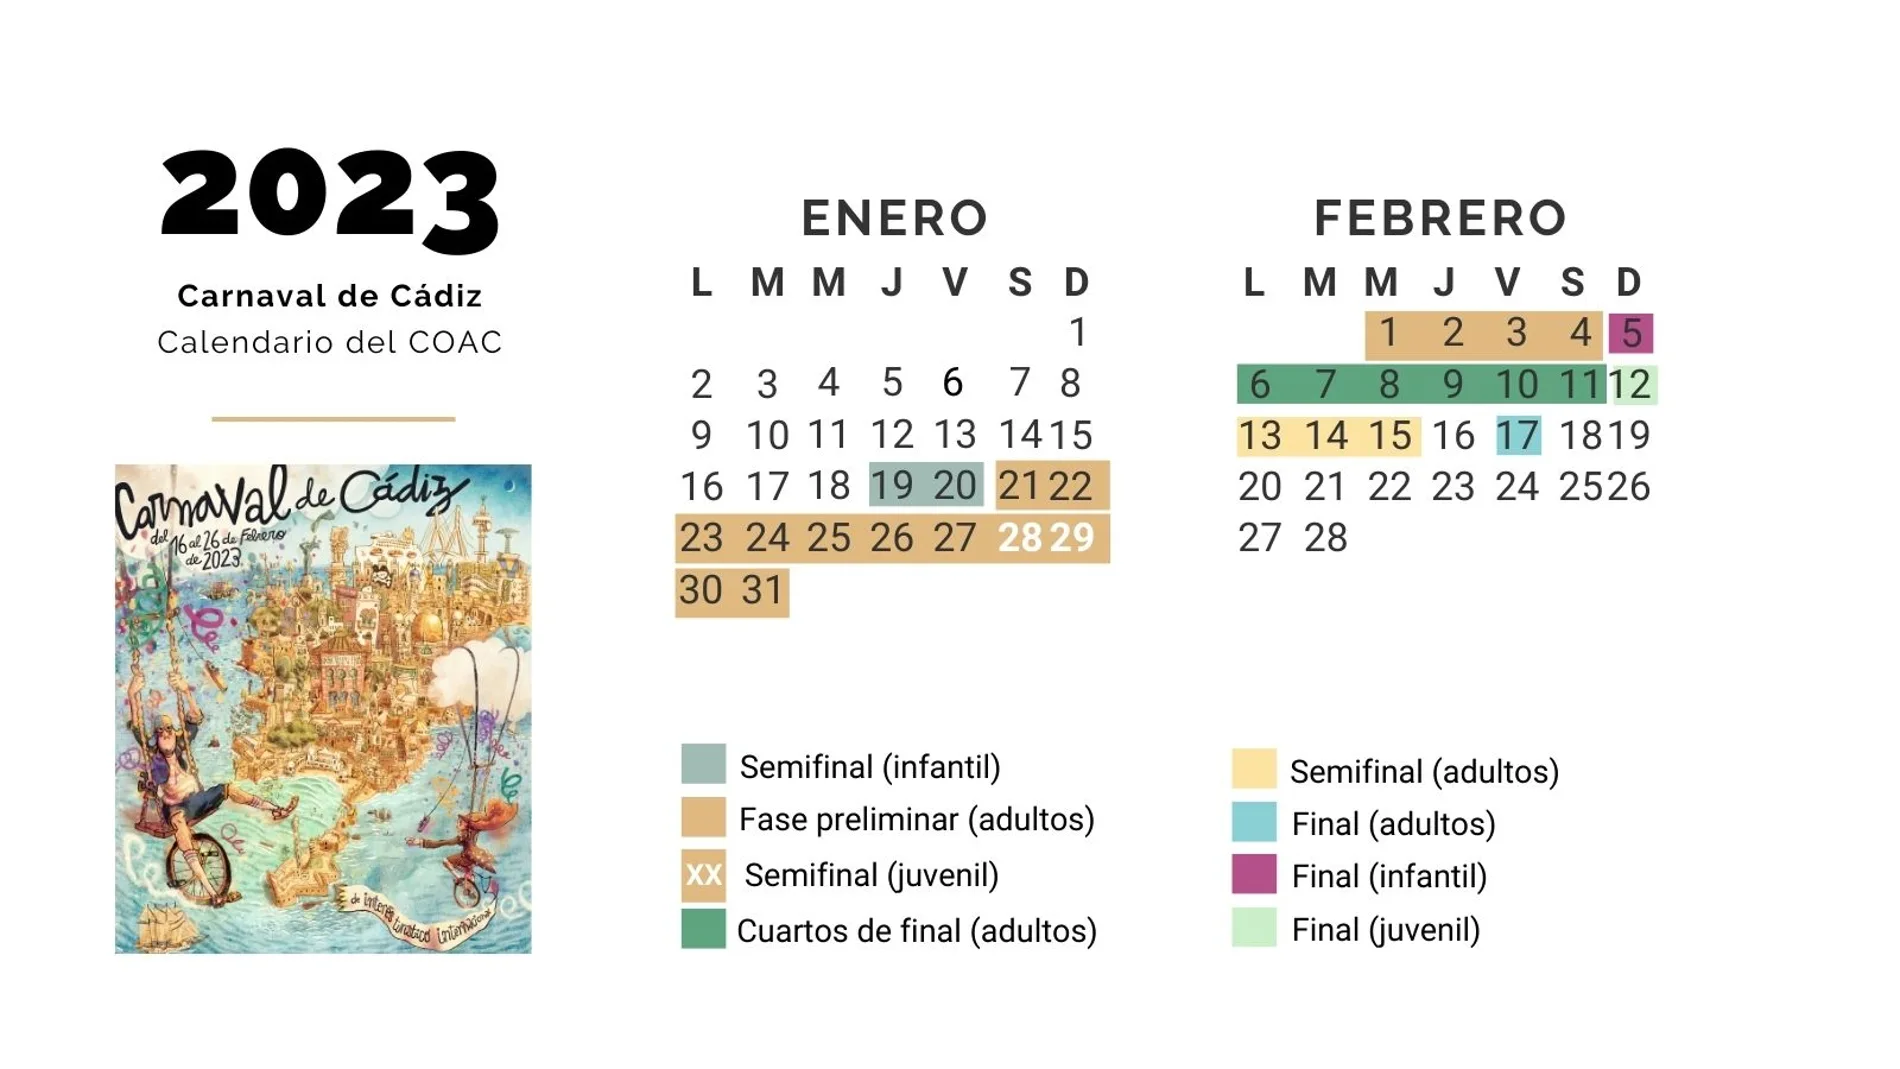 Calendario del COAC 2023: orden de actuaciones, día a día, del Carnaval de Cádiz